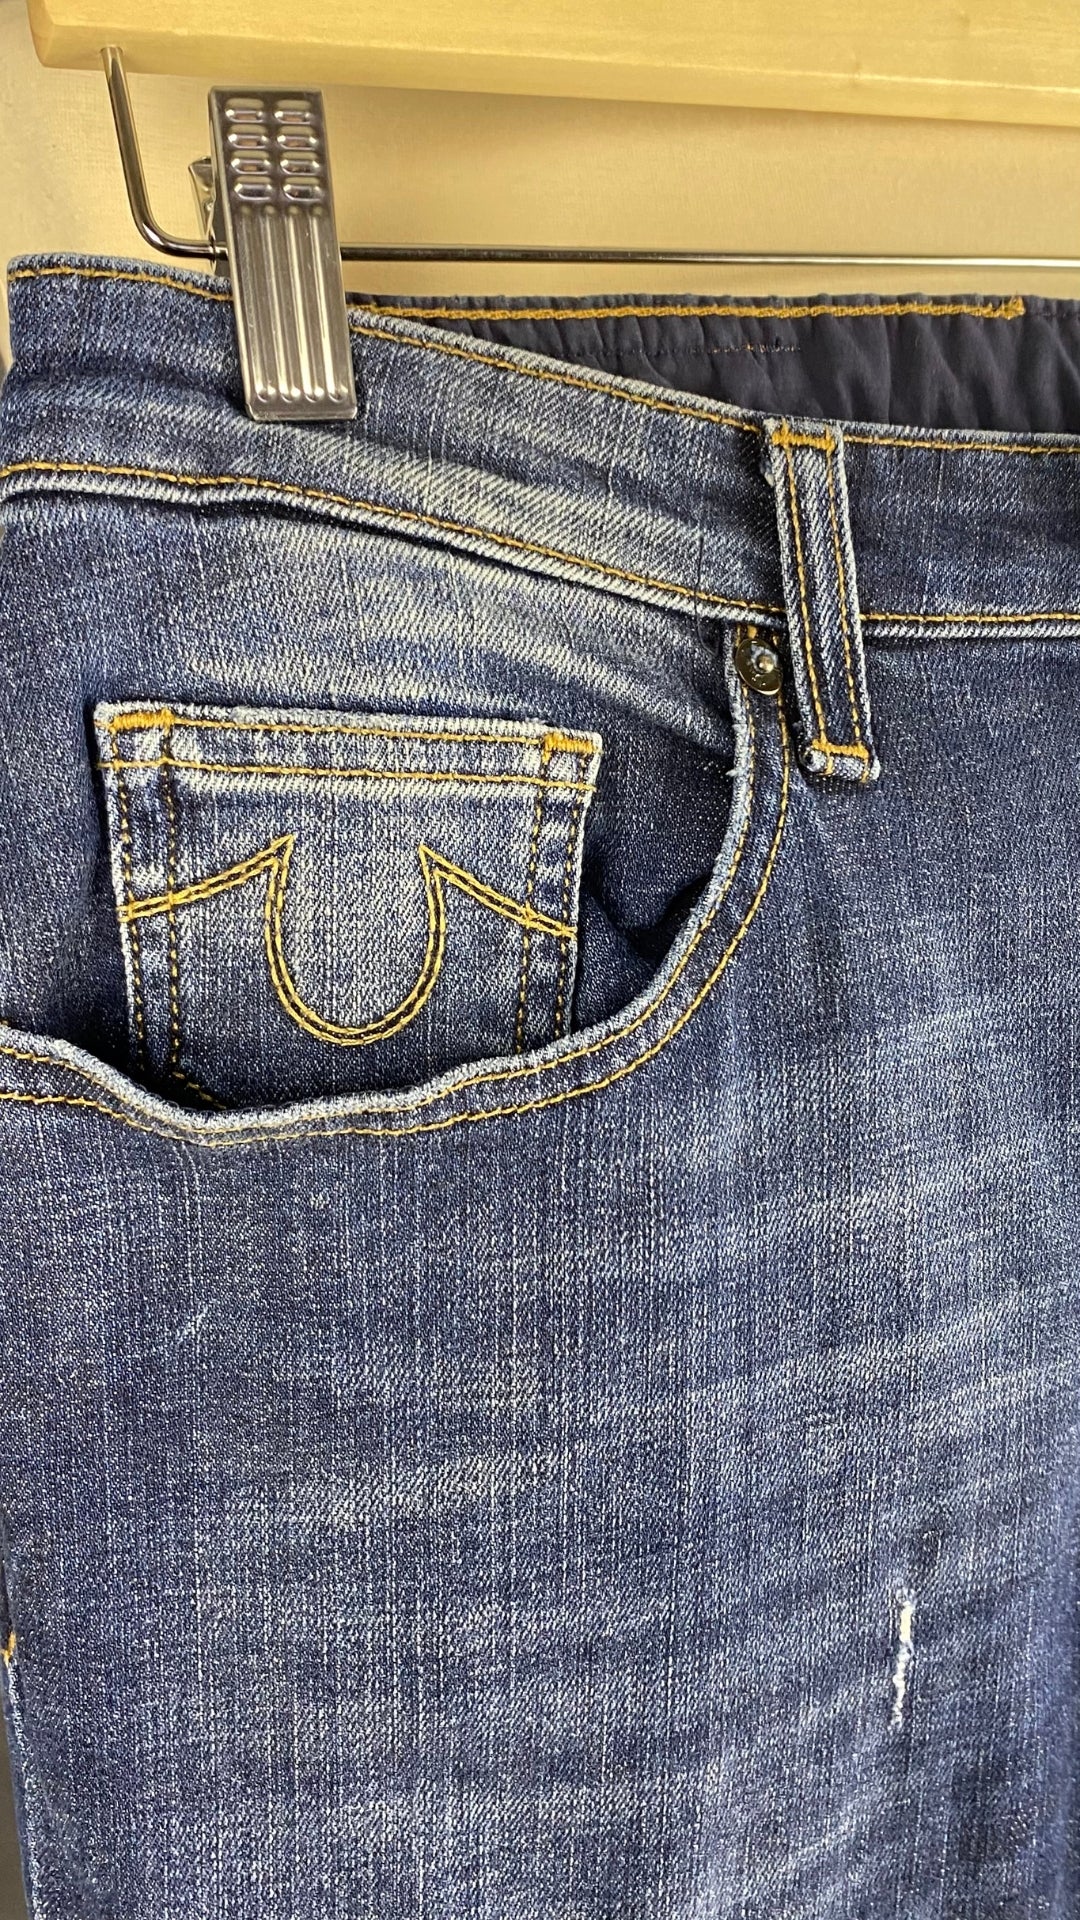 Jeans foncé à jambe étroite, True Religion, taille 27. Vue de la poche avant.